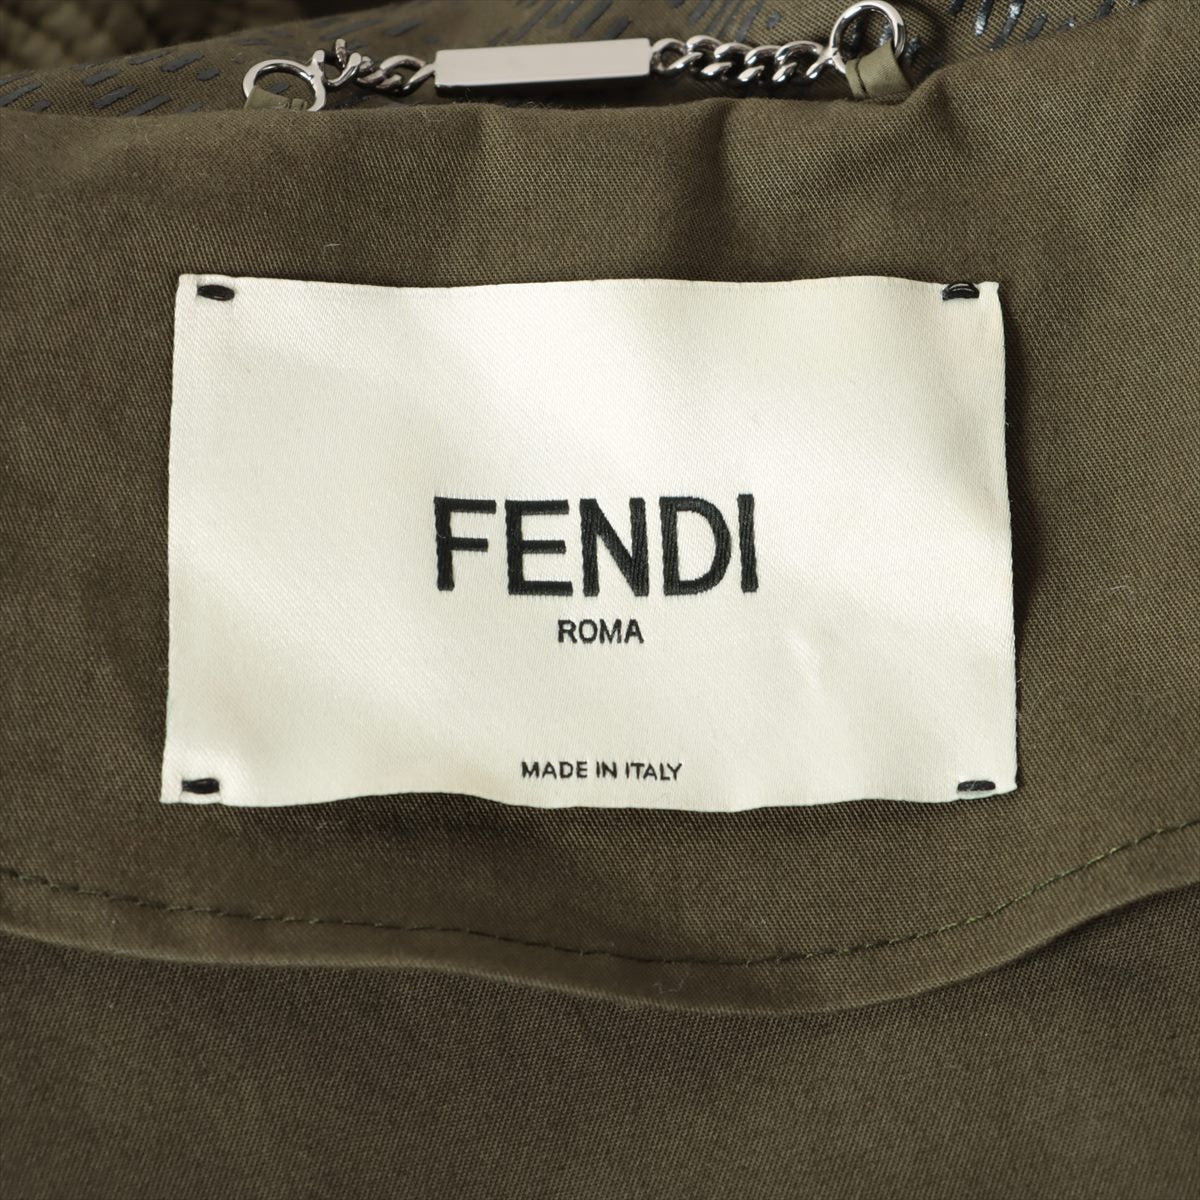 Fendi 21 years Cotton Military jacket 40 Ladies' Khaki  FLF649